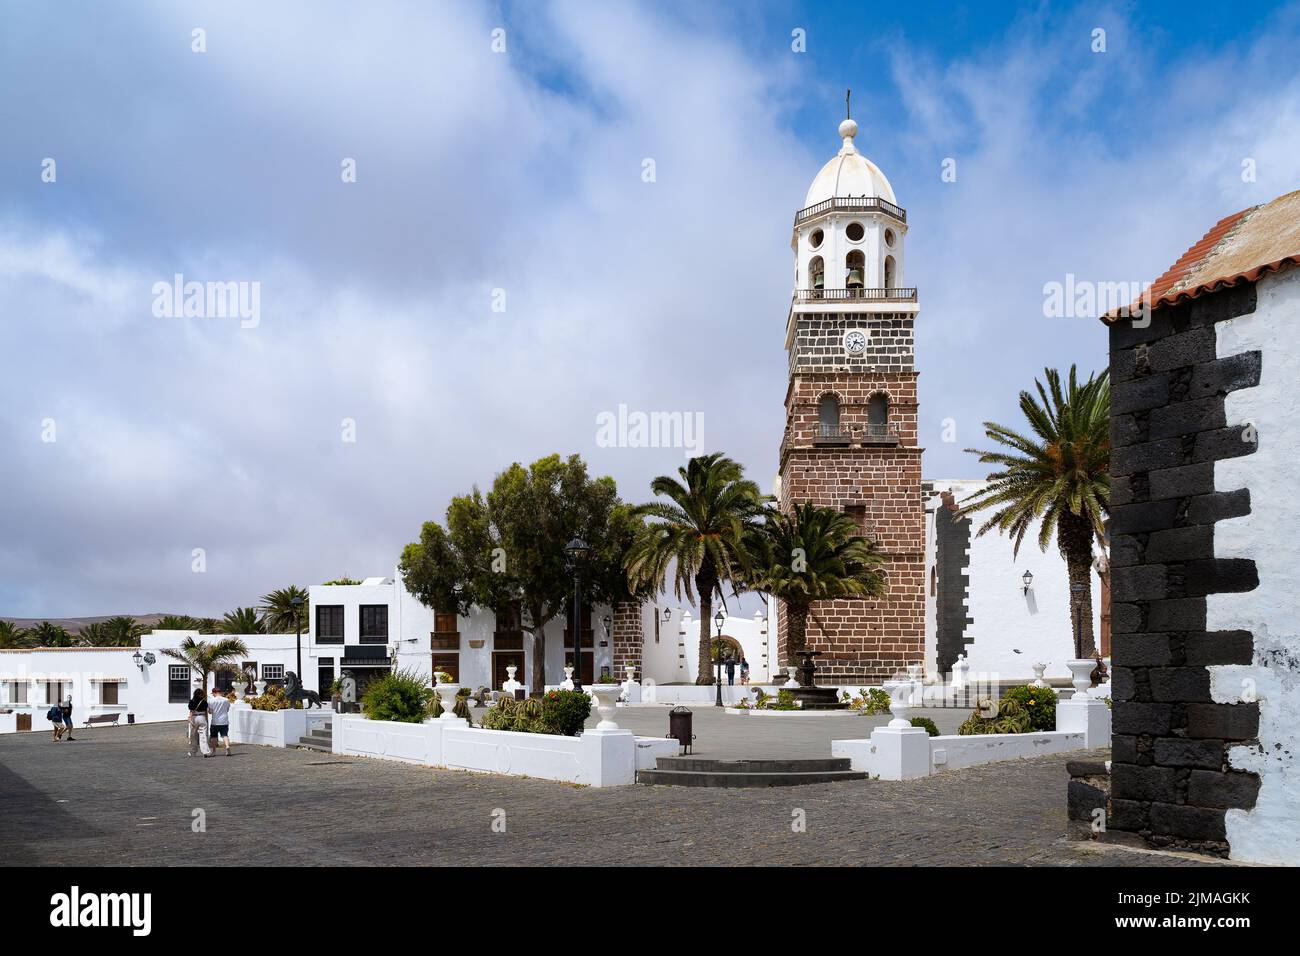 A cityscape of Iglesia de Nuestra Senora de Guadalupe church in Teguise, Lanzarote, Canary Islands Stock Photo